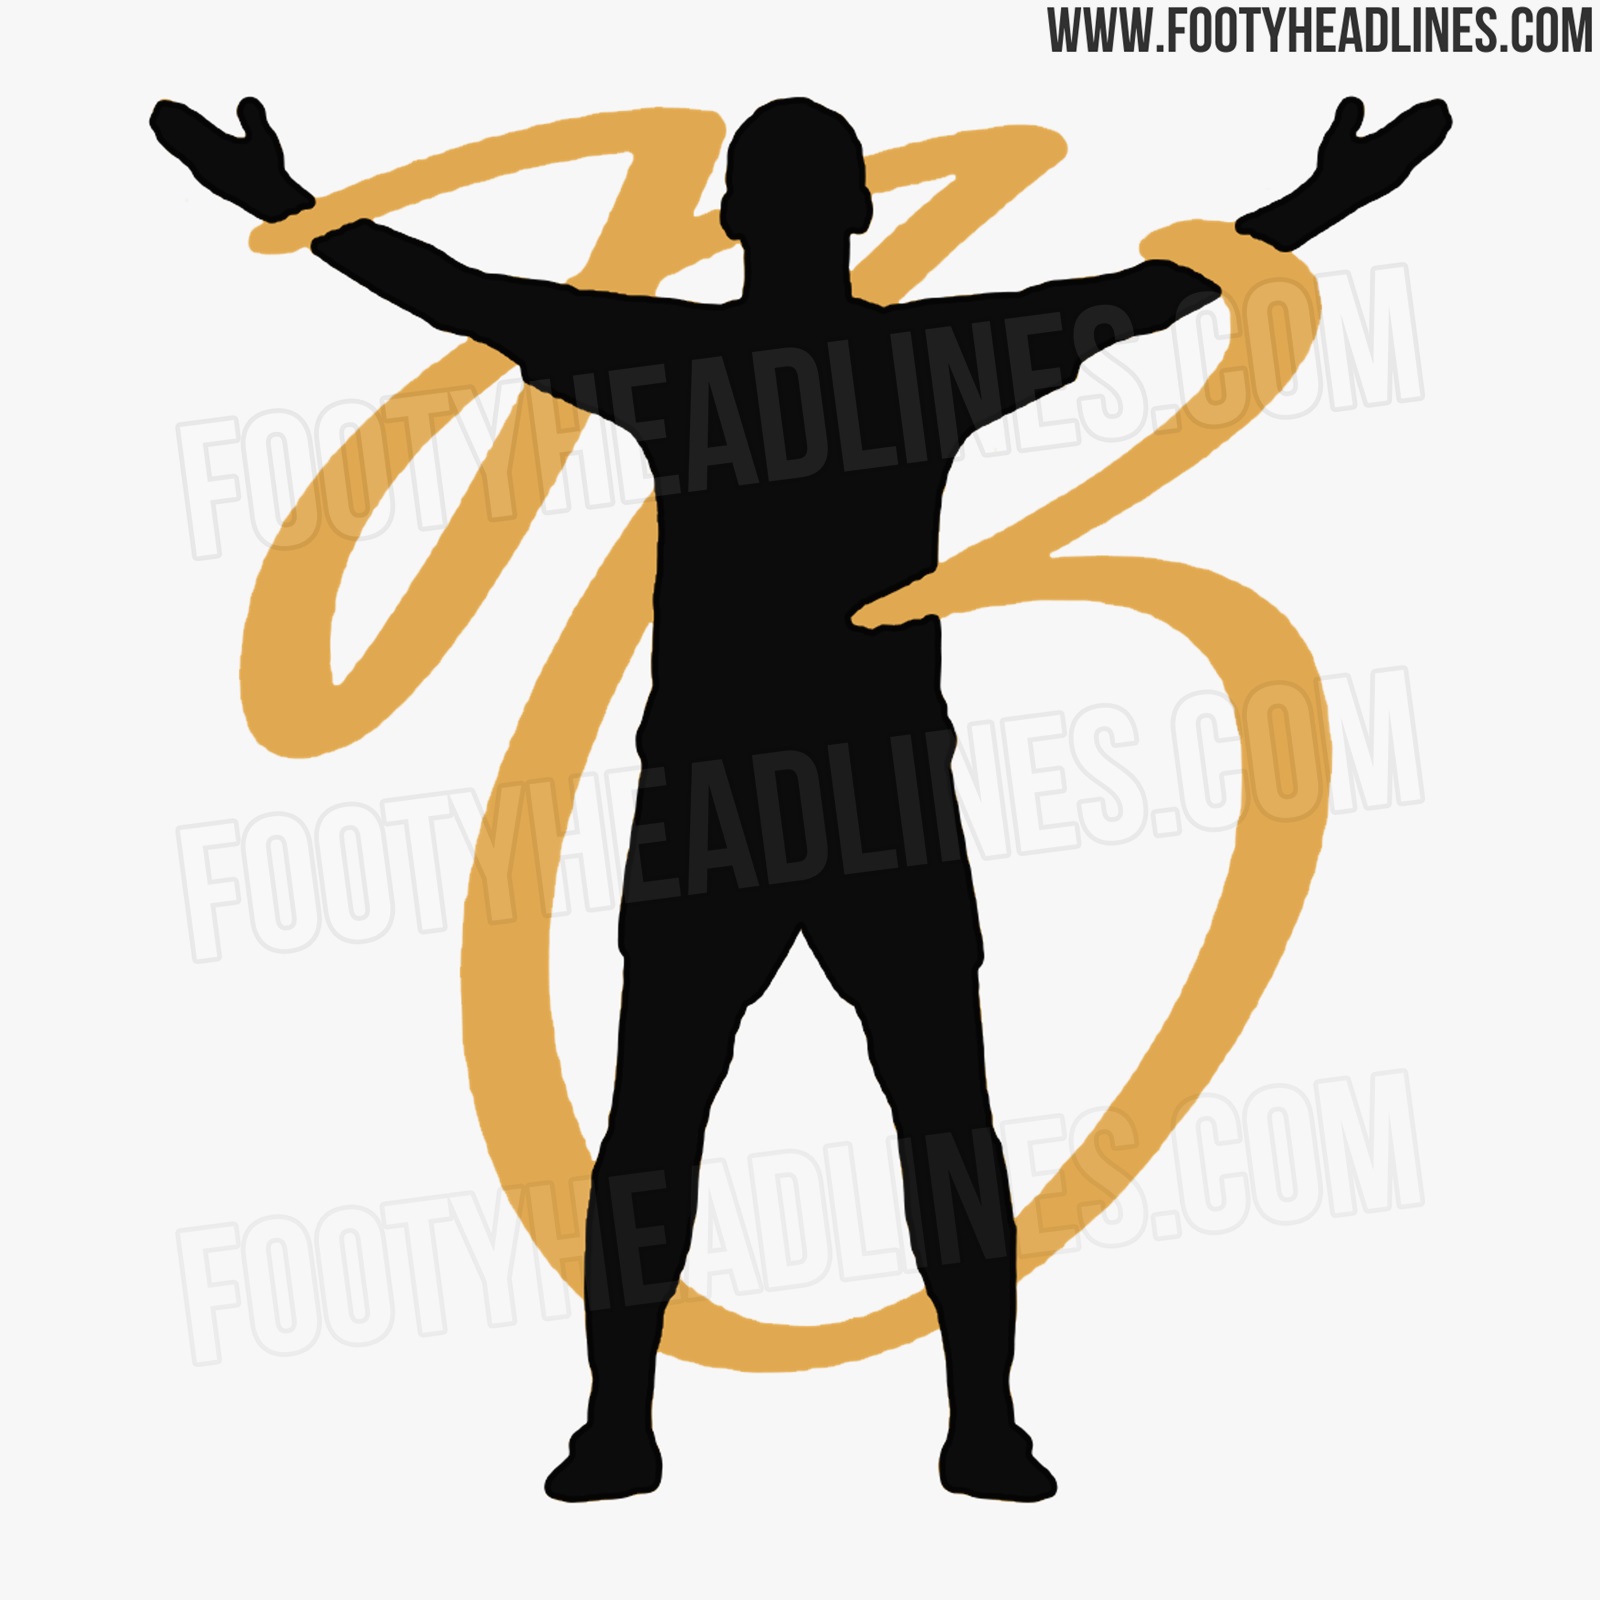 امضای بلینگام؛ طرح لو رفته از لوگوی اختصاصی آدیداس برای ستاره رئال مادرید / عکس